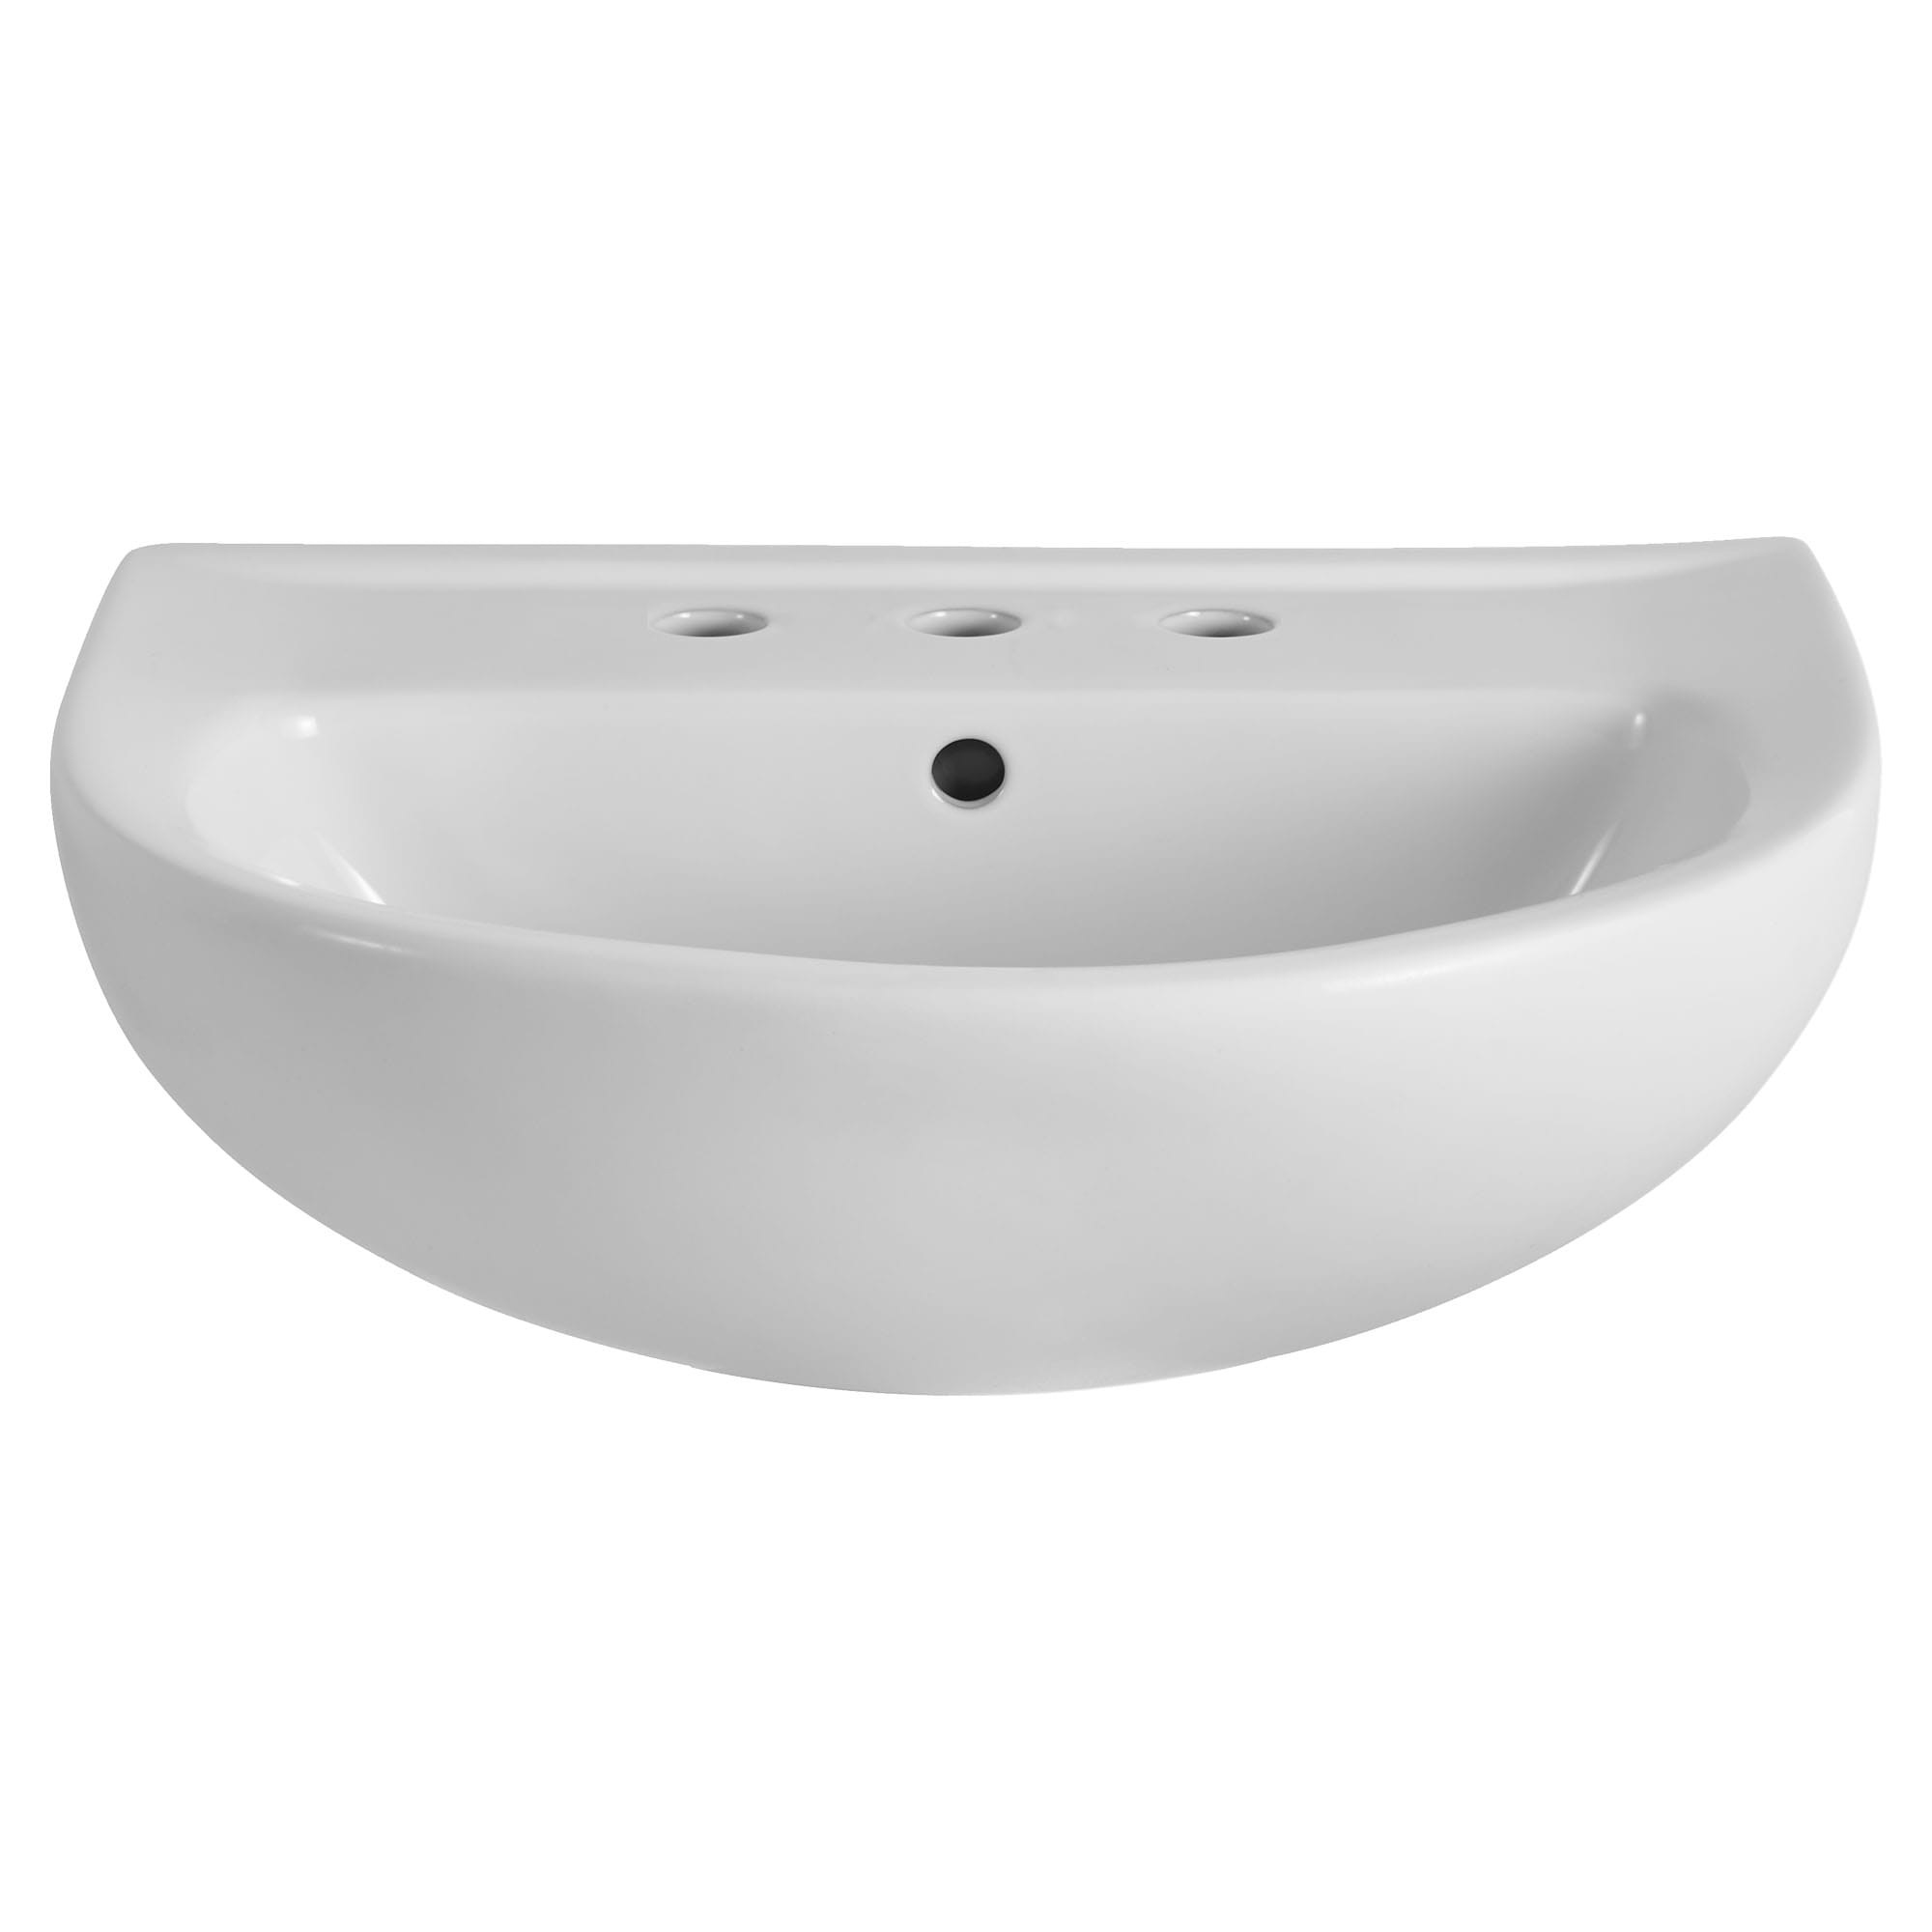 22-Inch Evolution 8-Inch Widespread Pedestal Sink Top